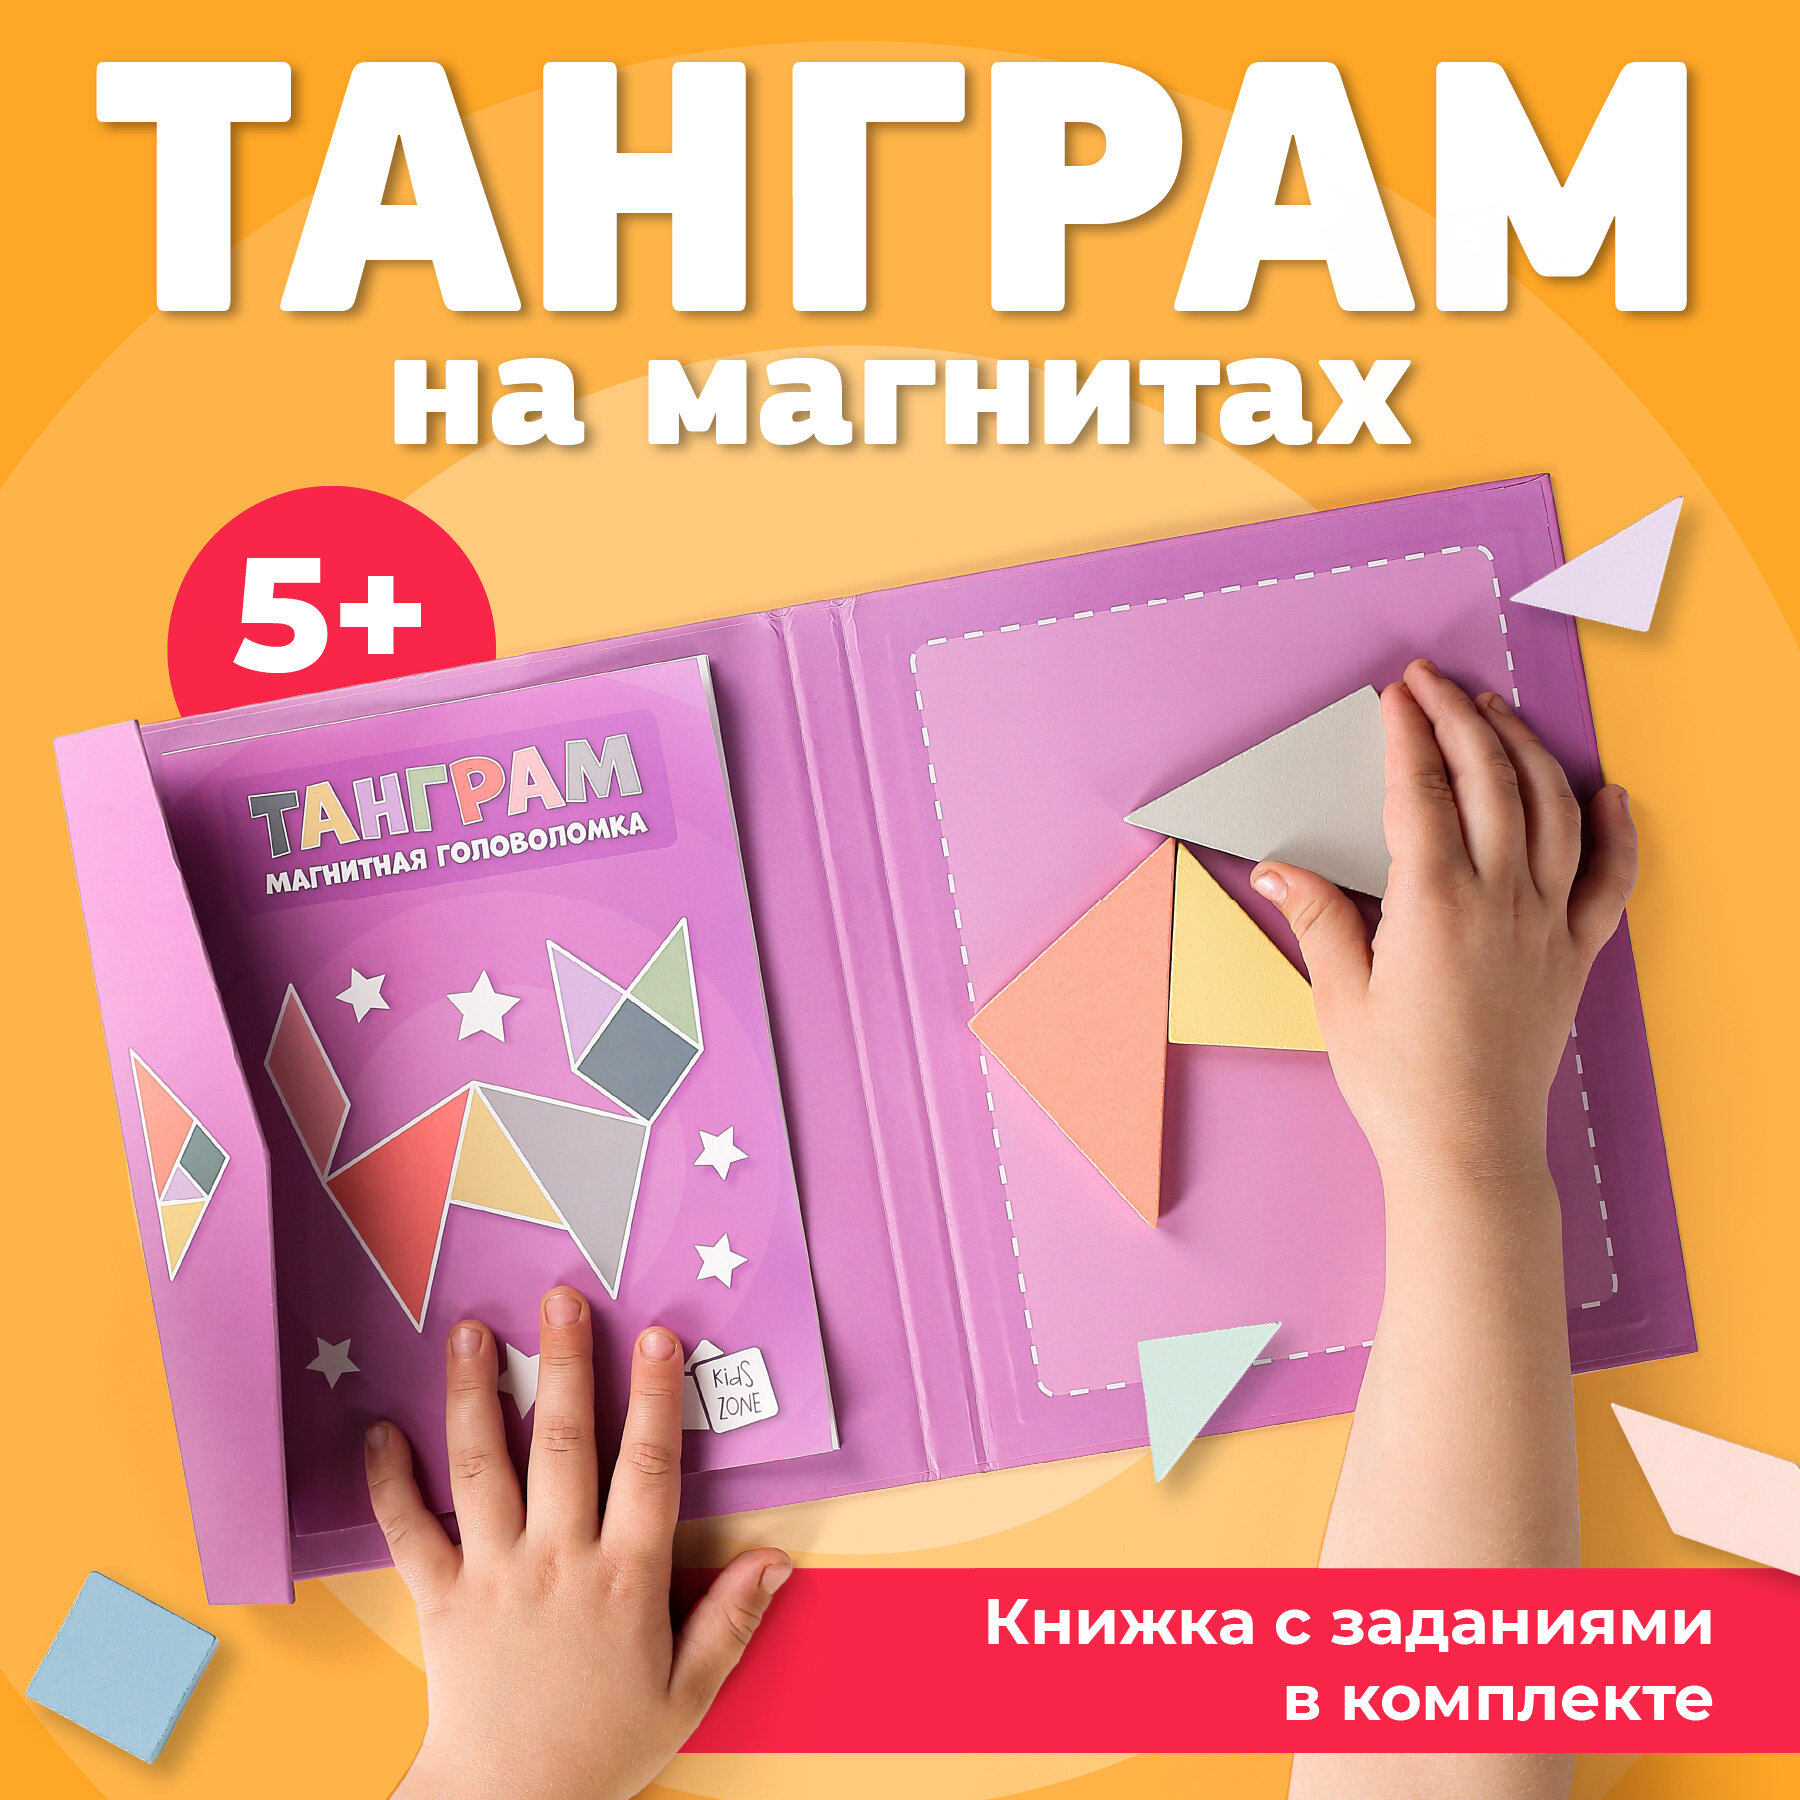 Танграм магнитный с заданиями, Kids Zone, Головоломка для детей / Детский tangram, Розовый